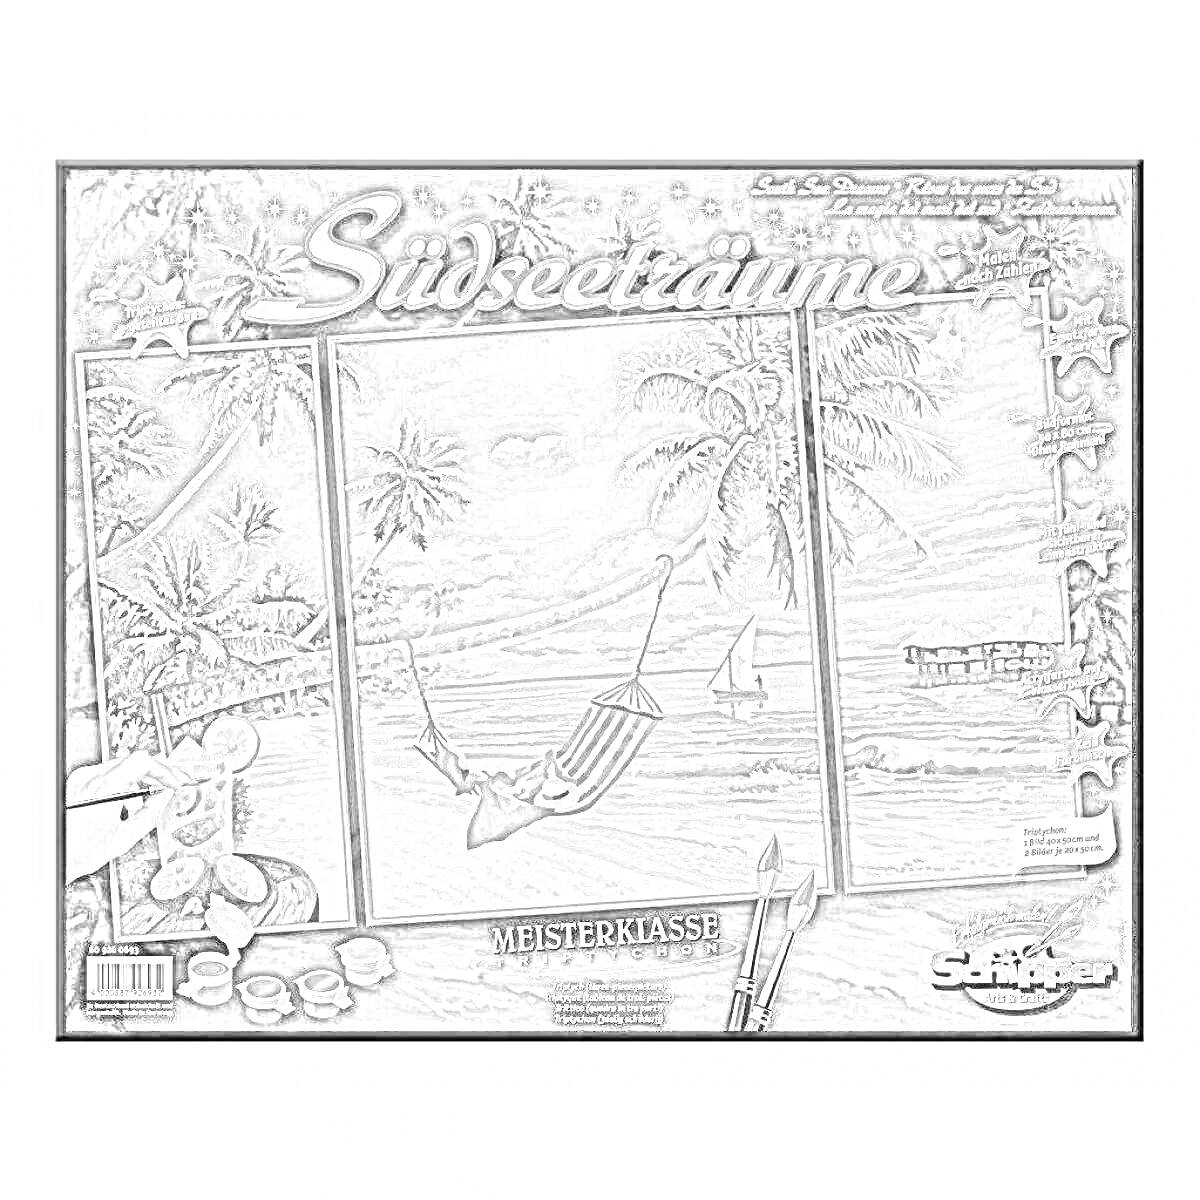 Раскраска Südseeträume (Тропическая мечта). Комплект содержит элементы для раскрашивания: пляж, пальмы, гамак, лодка, море, небо.